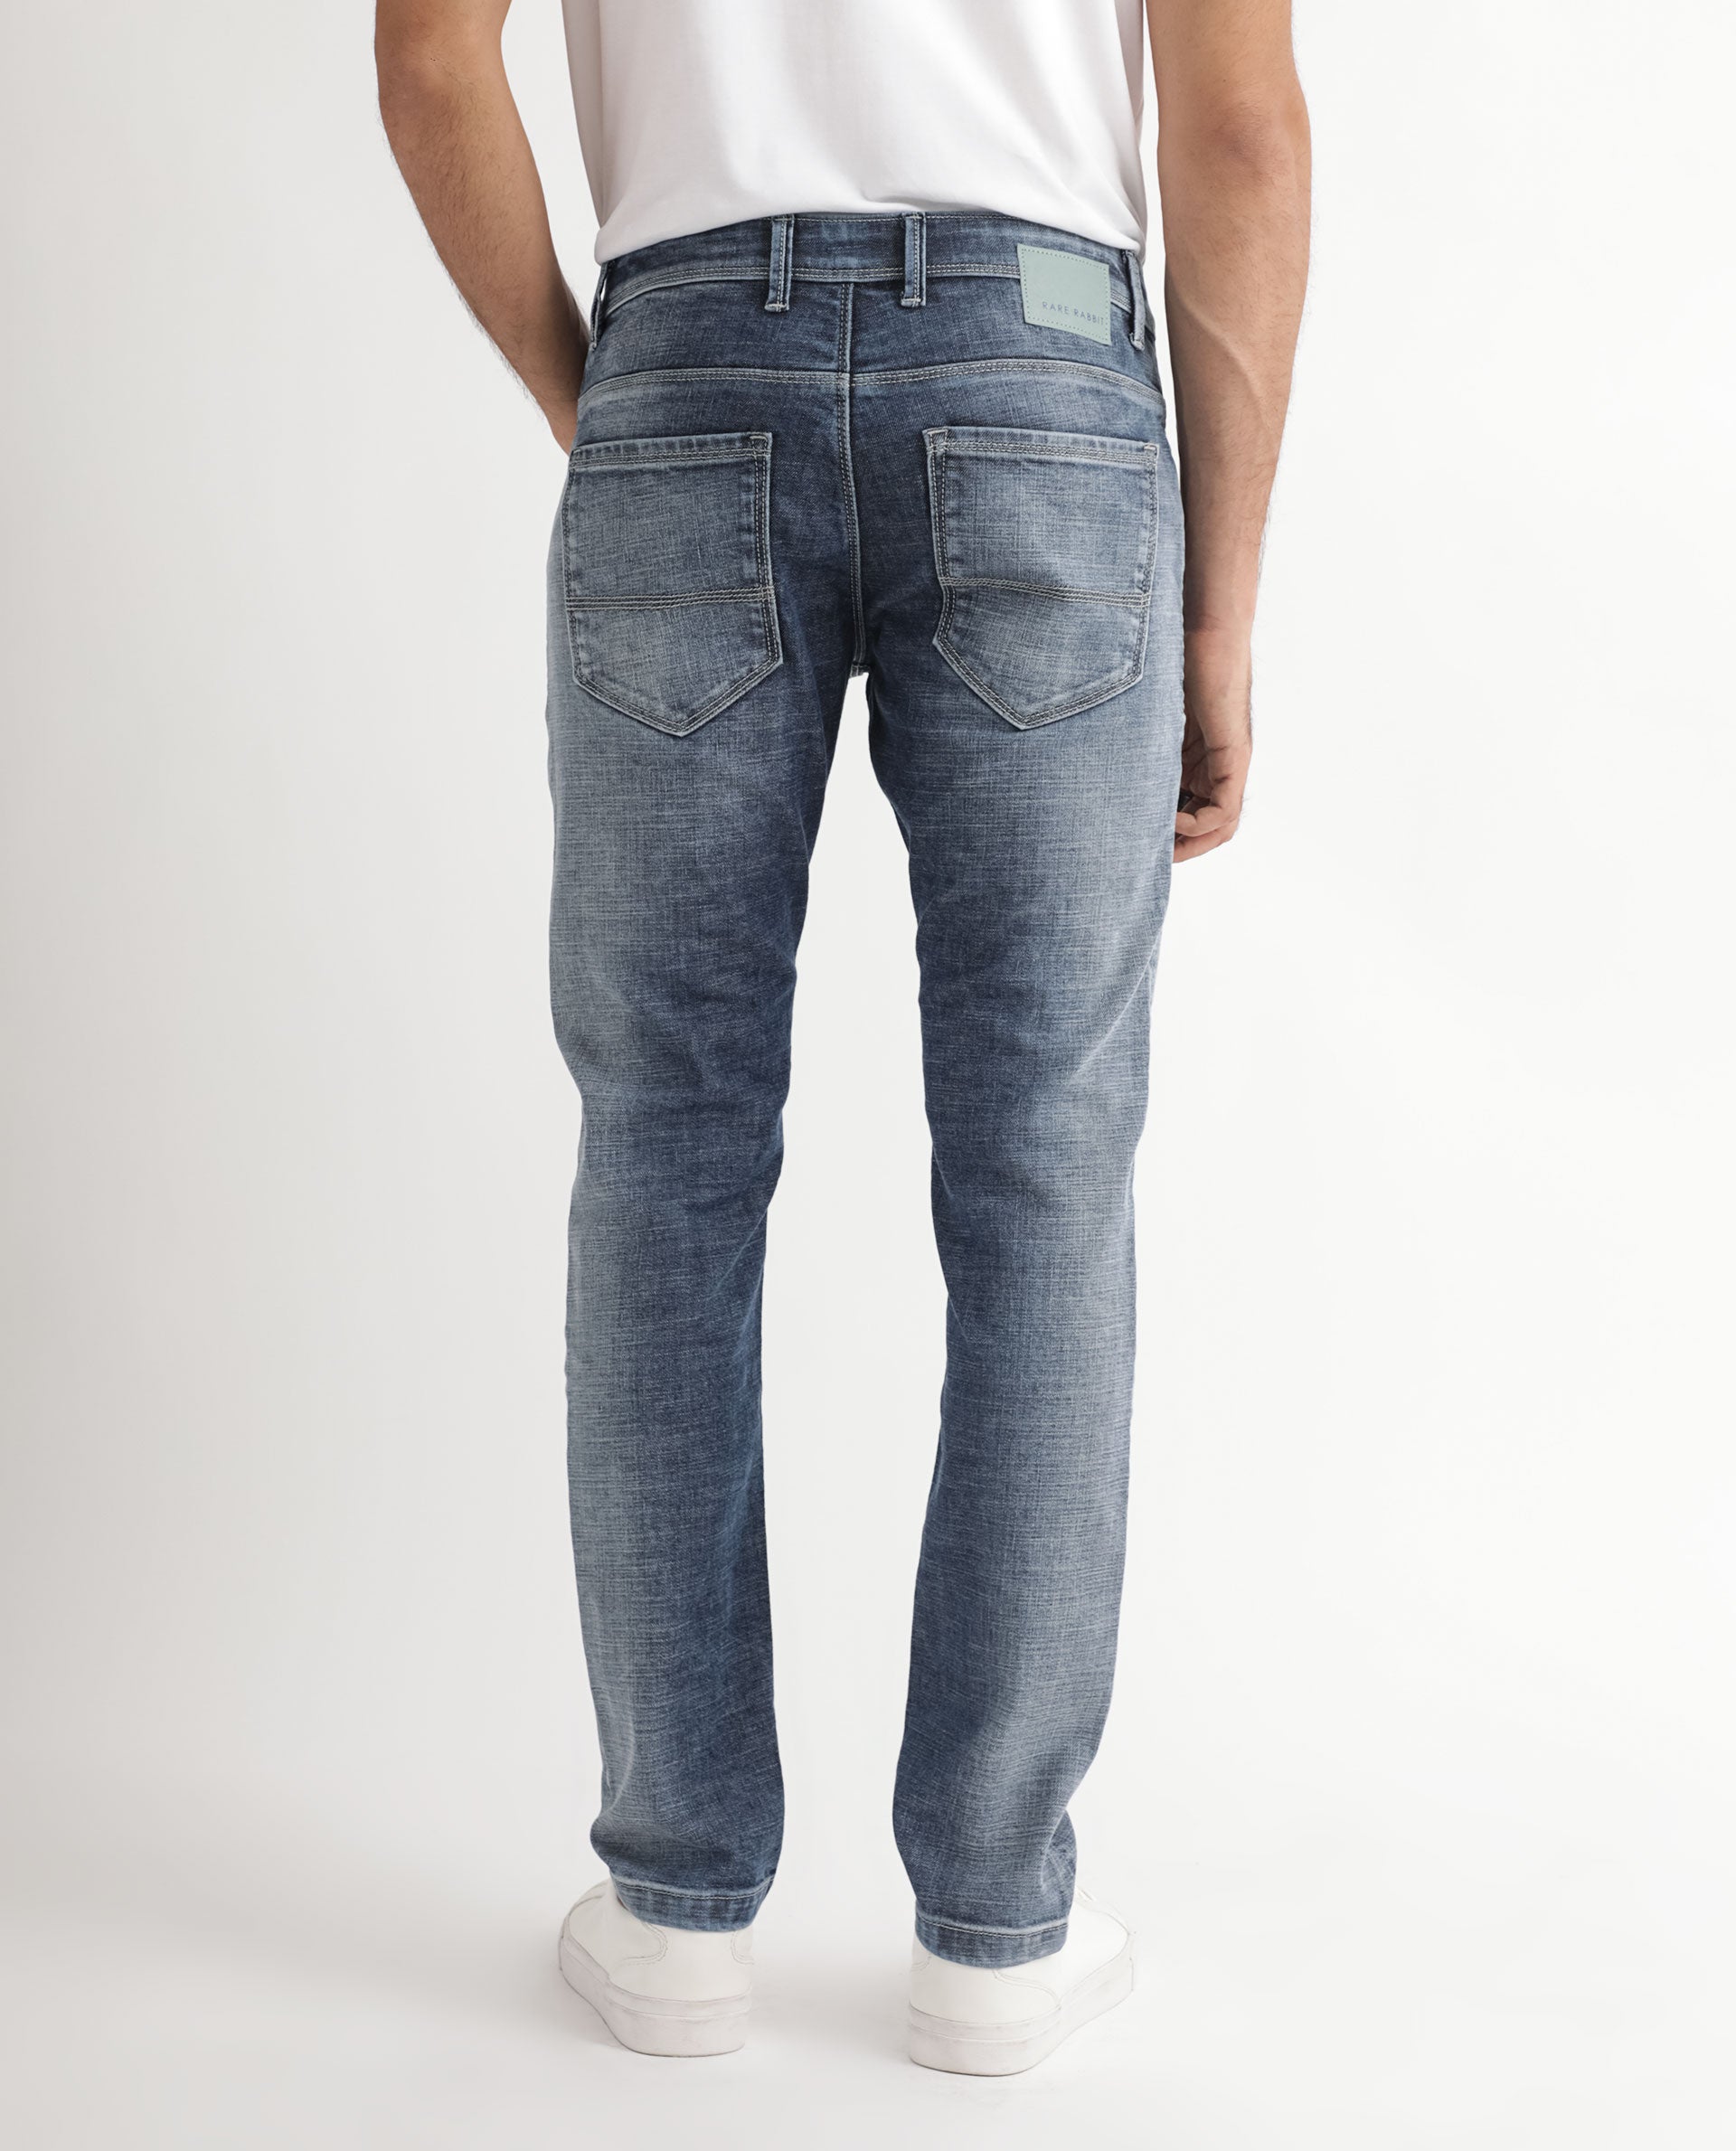 Plain blue jeans - RB Designs